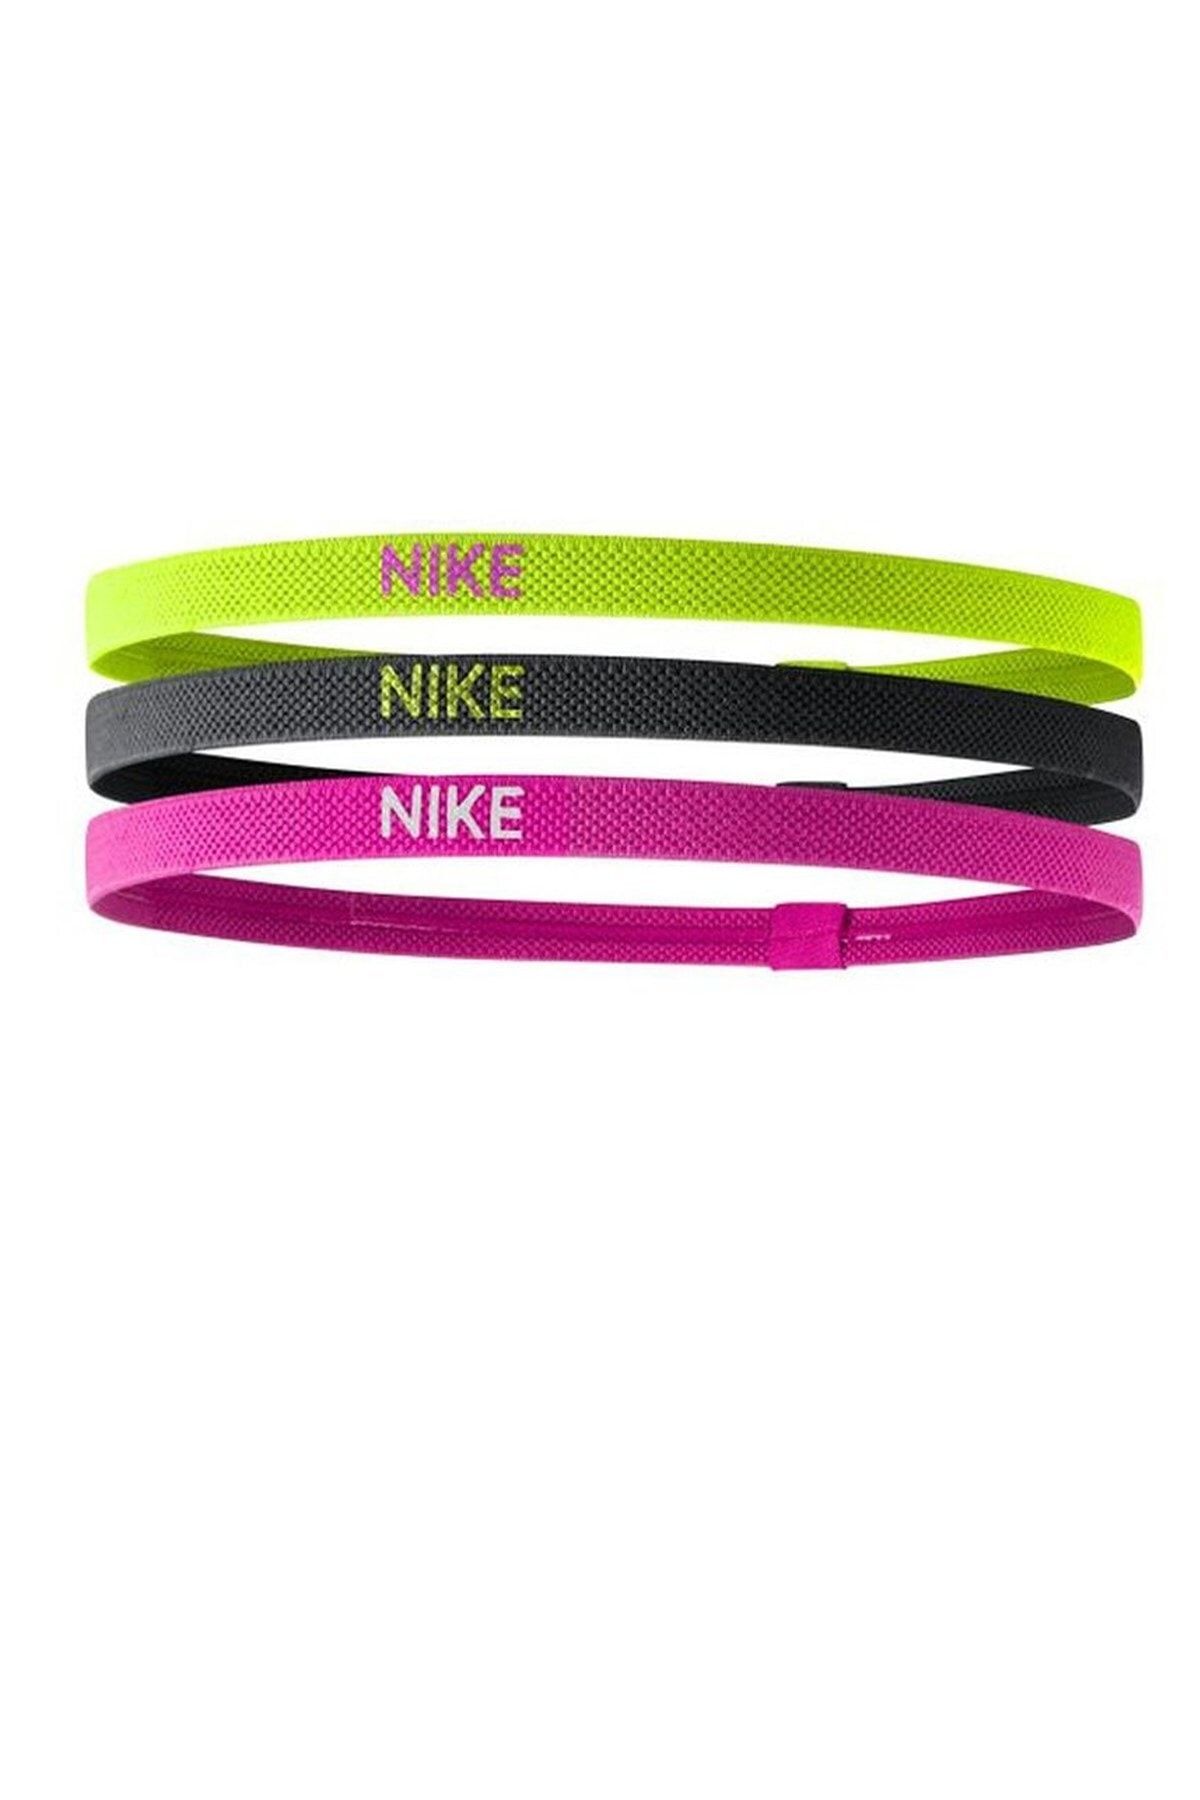 Nike Elastıc Headbands 2.0 3 Pk Volt/black/hyper Pınk Osfm Saç Bandı N.100.4529.709.os